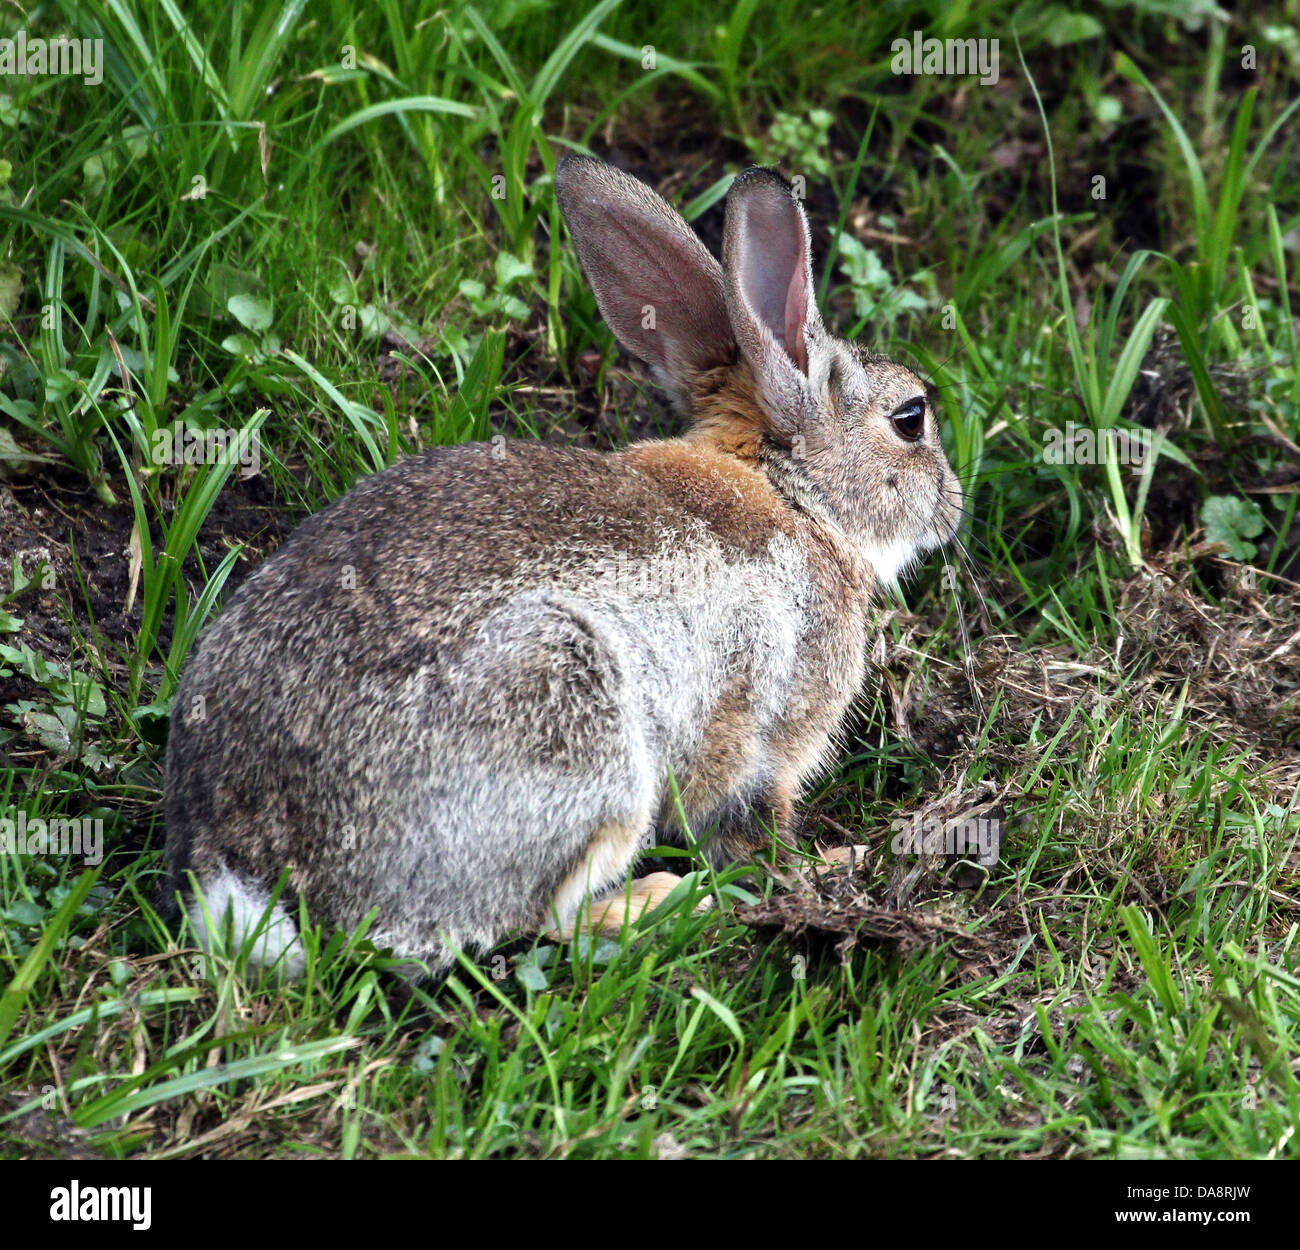 Série de très gros plans détaillés de lapins (Oryctolagus cuniculus) l'alimentation, plus de 60 images en série Banque D'Images